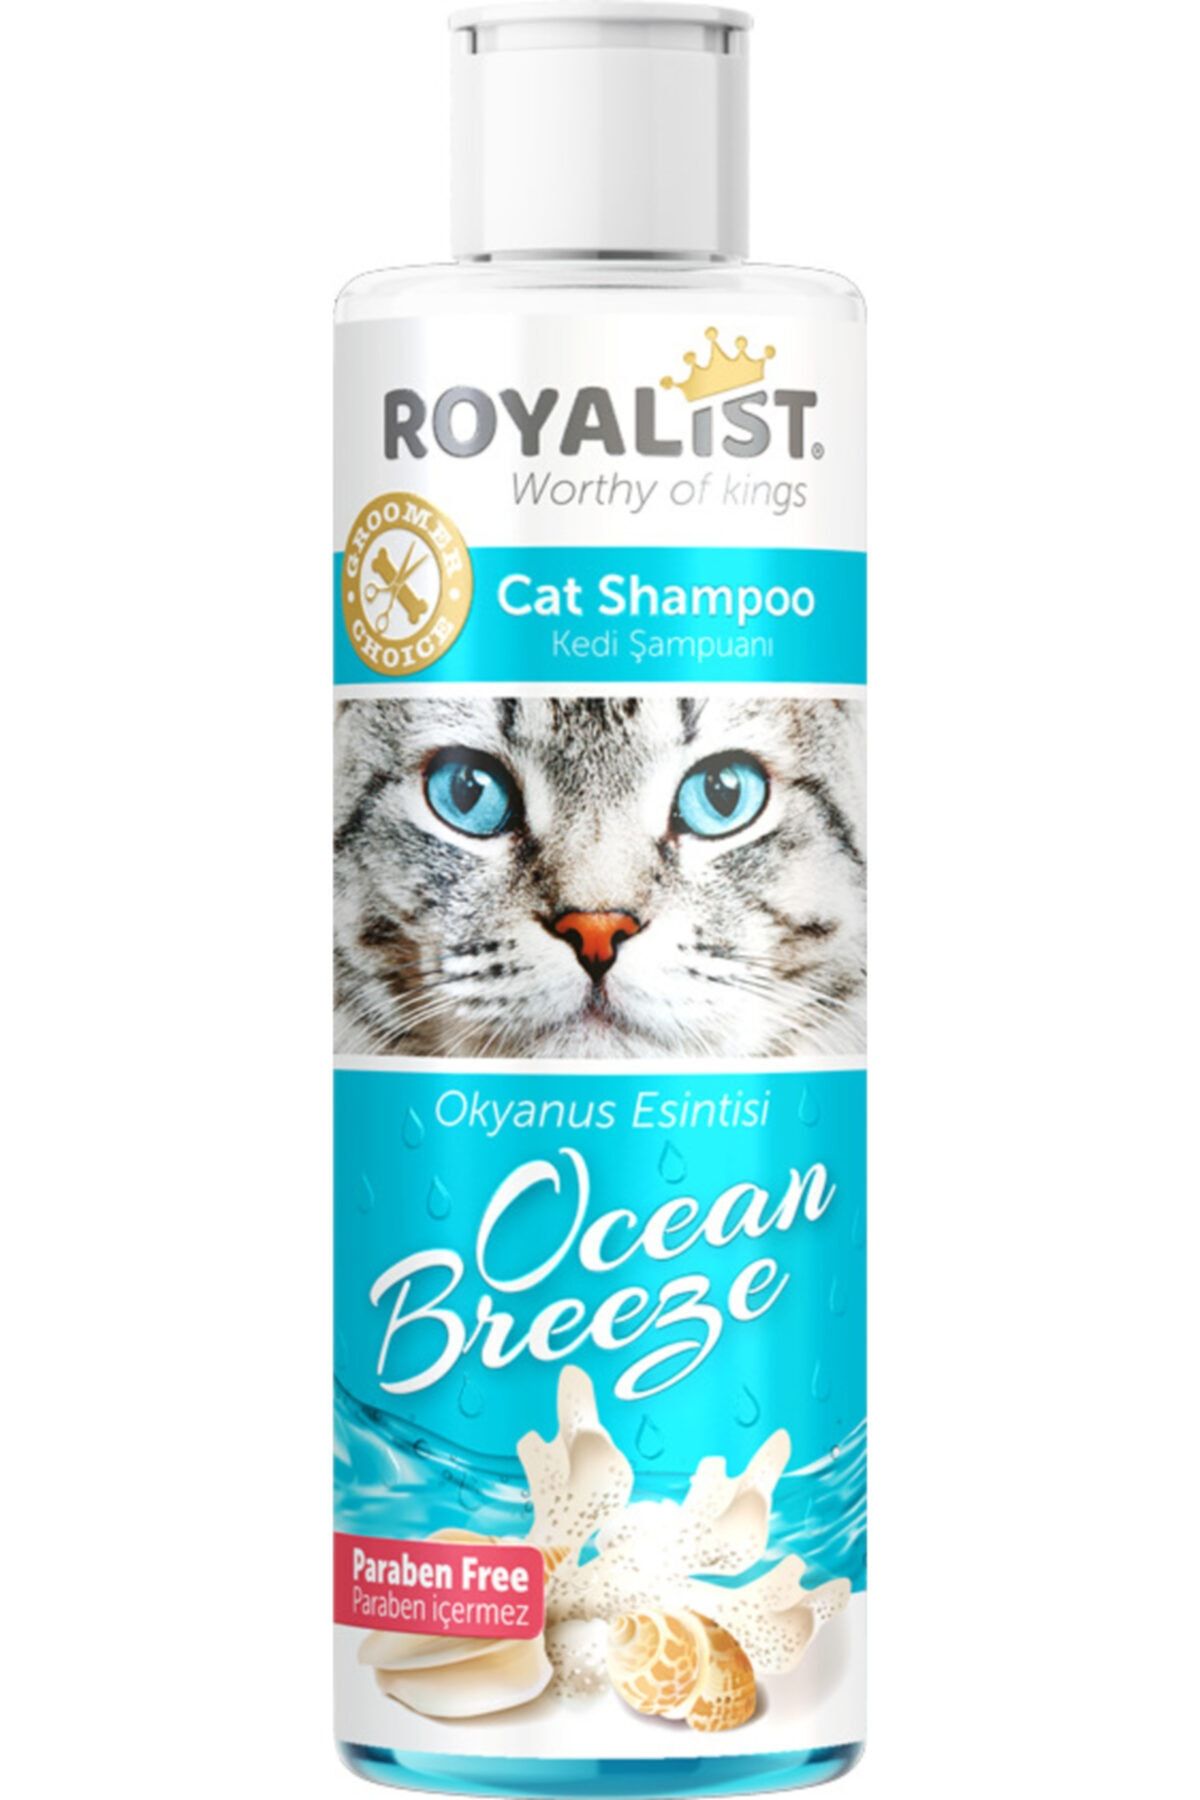 Royalist Royalıst Kedi Şampuan Ocean Breeze 250 ml